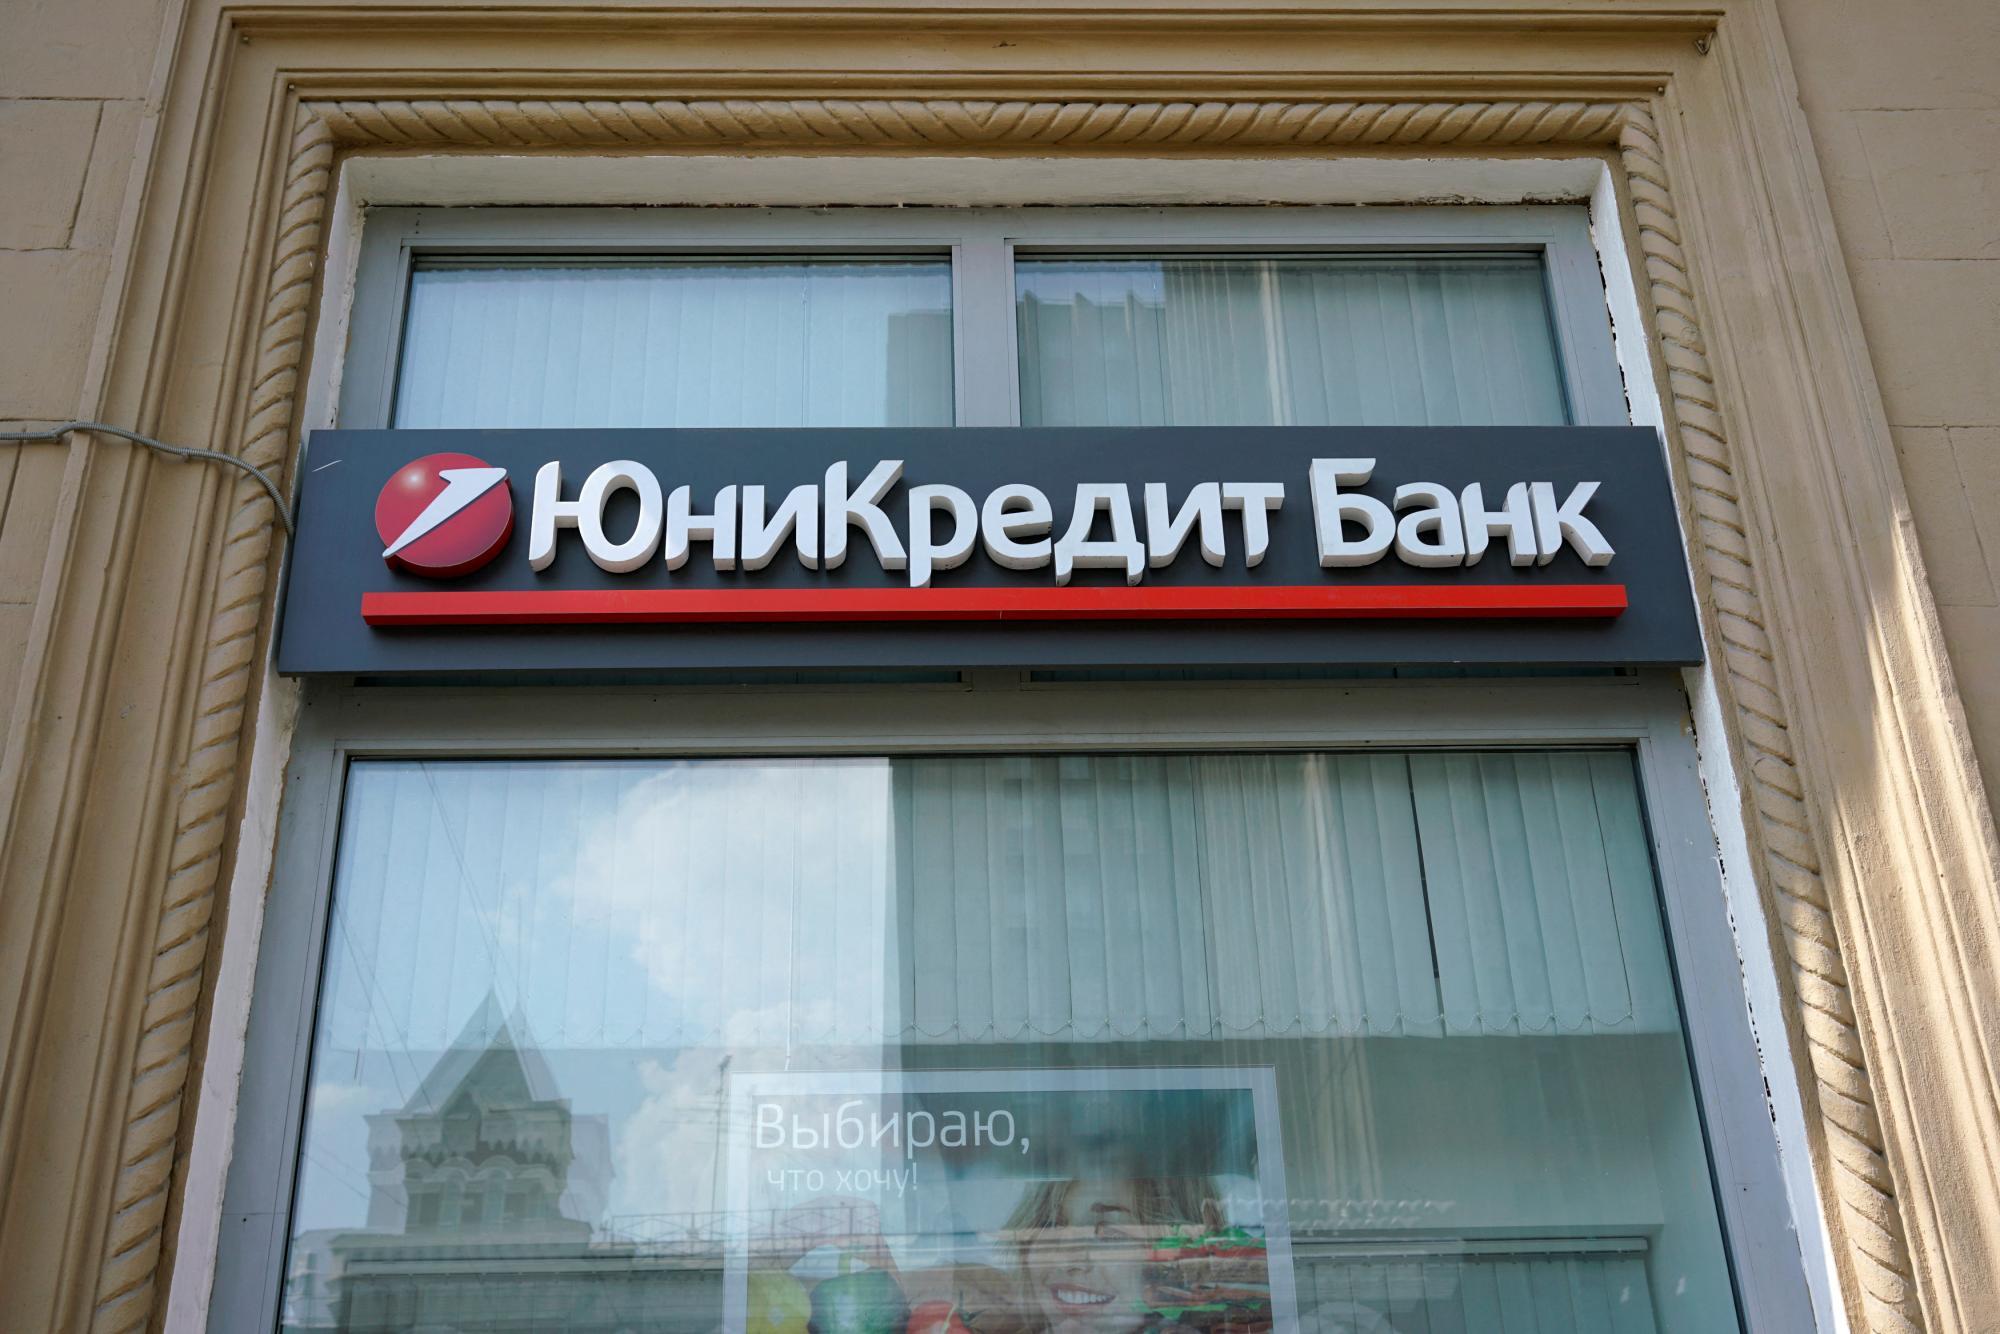 Russland friert Konten und Vermögen von Bank Unicredit ein